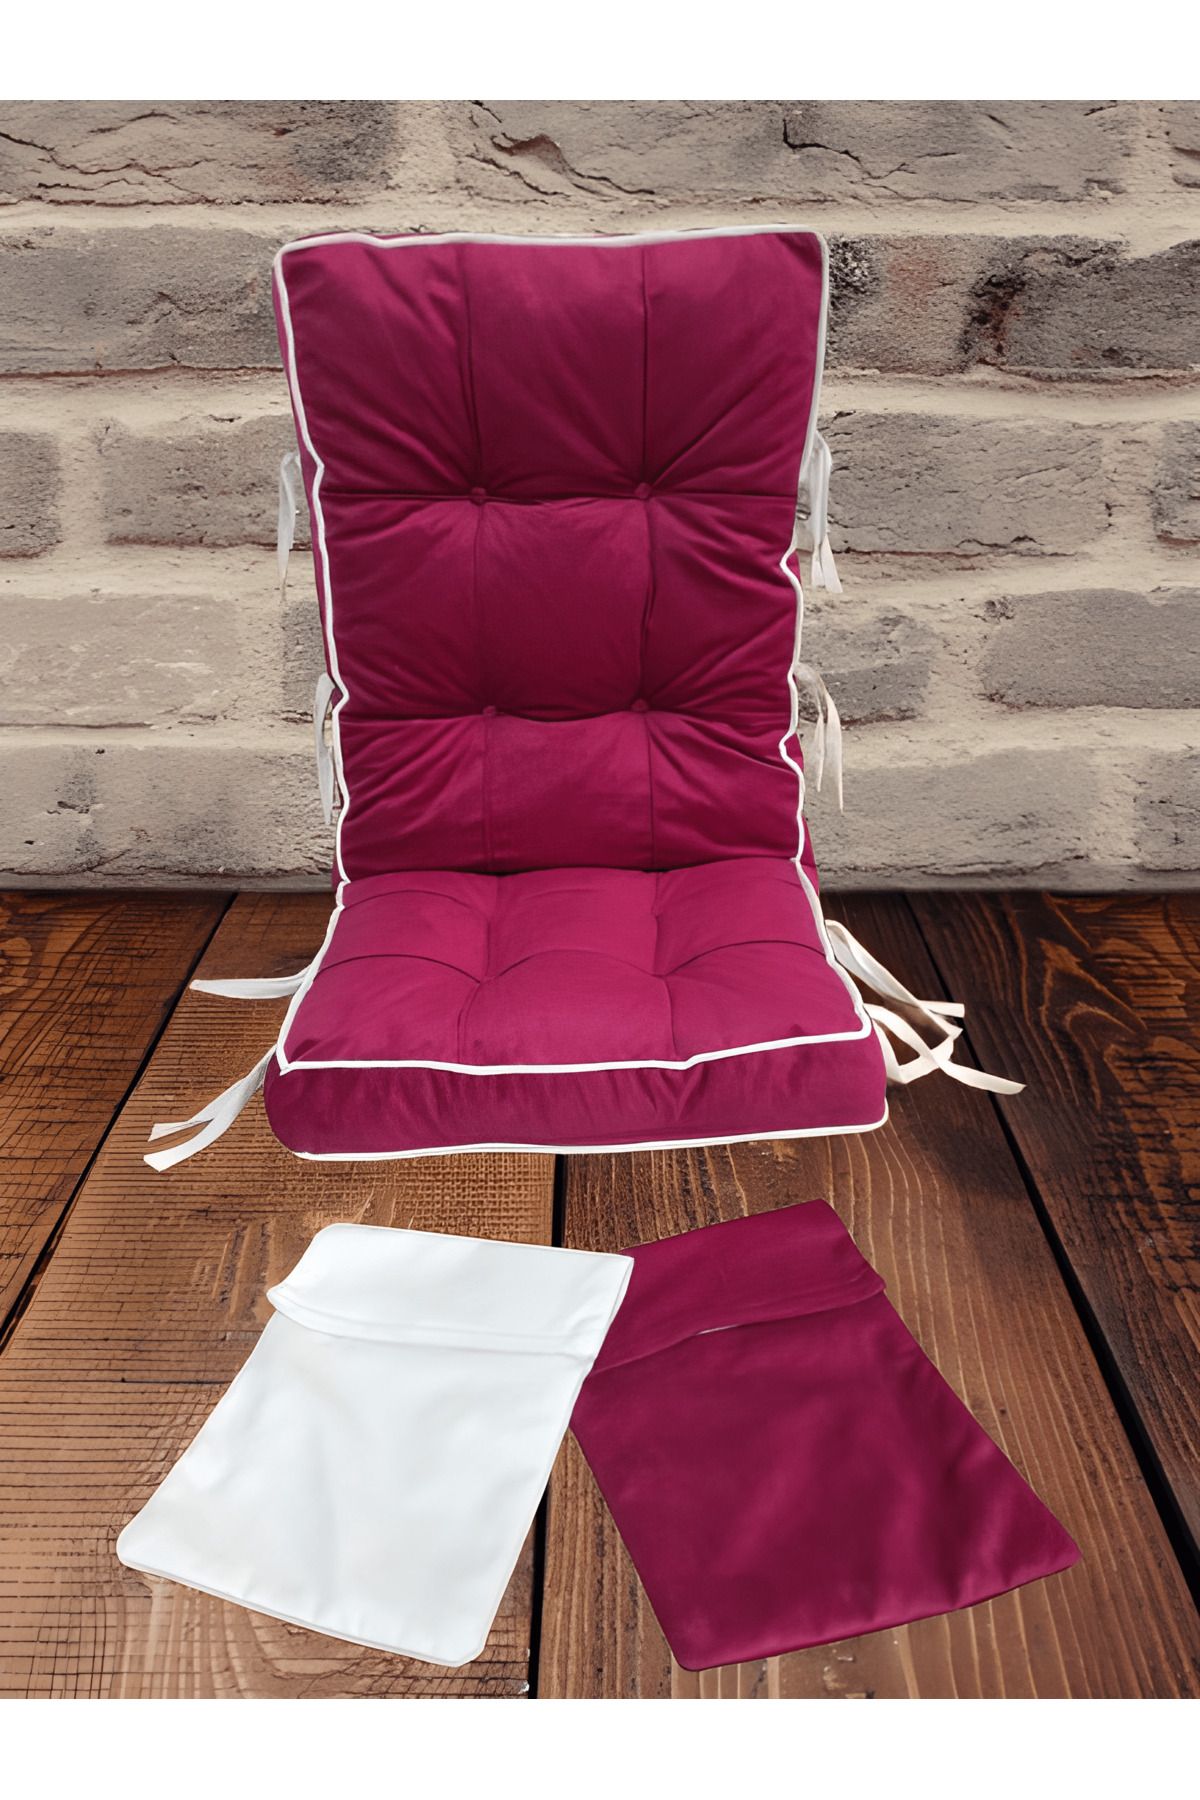 Mobildeco Lüx Sallanan Sandalye Minderi Çift Renkli Çift Cepli BORDO-KREM (47LİK)